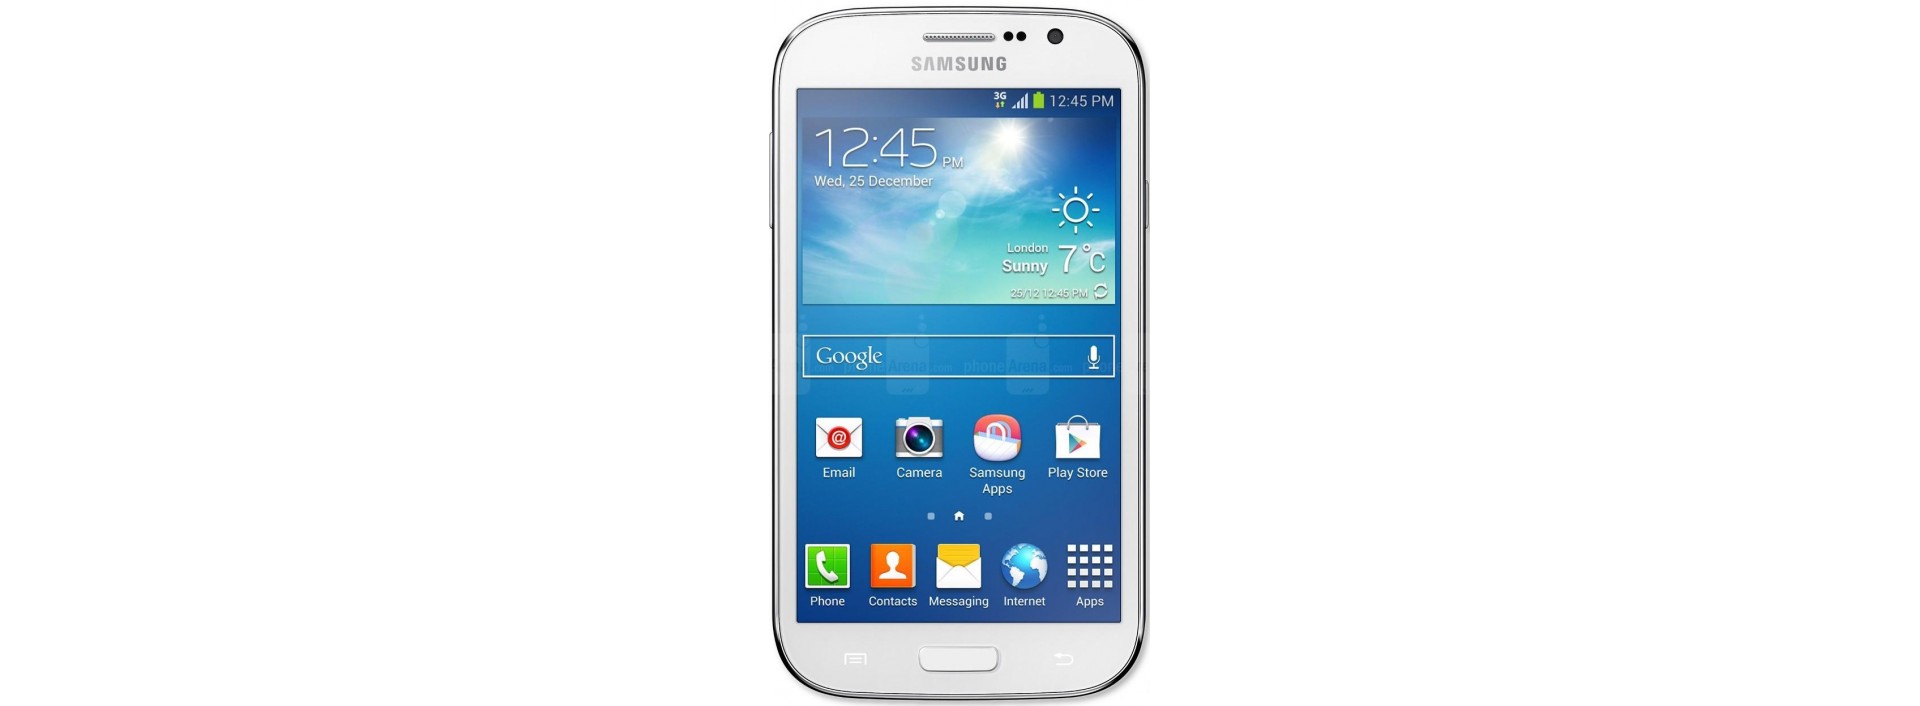  Fundas PERSONALIZADAS Samsung Galaxy Grand i9080, Envío Gratis en TMS